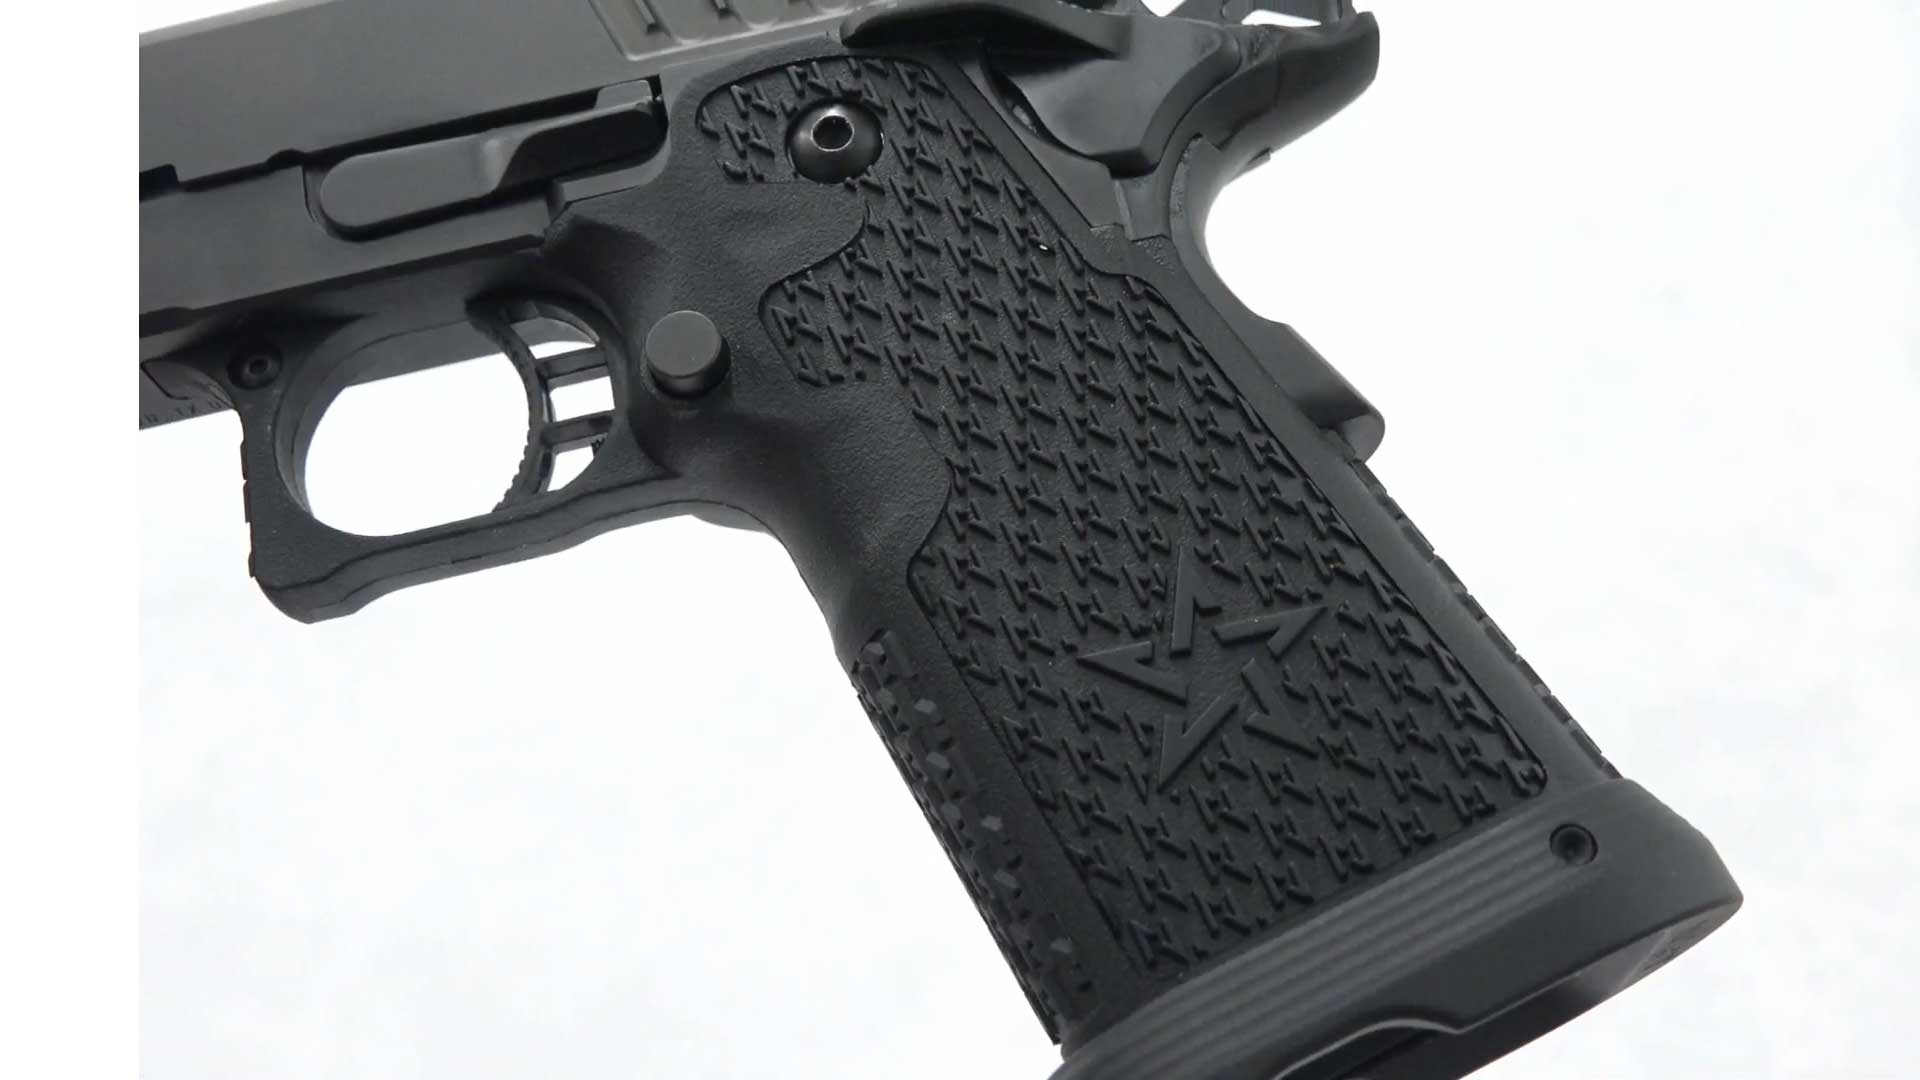 staccato xl left-side frame gun handgun grip black plastic texturing